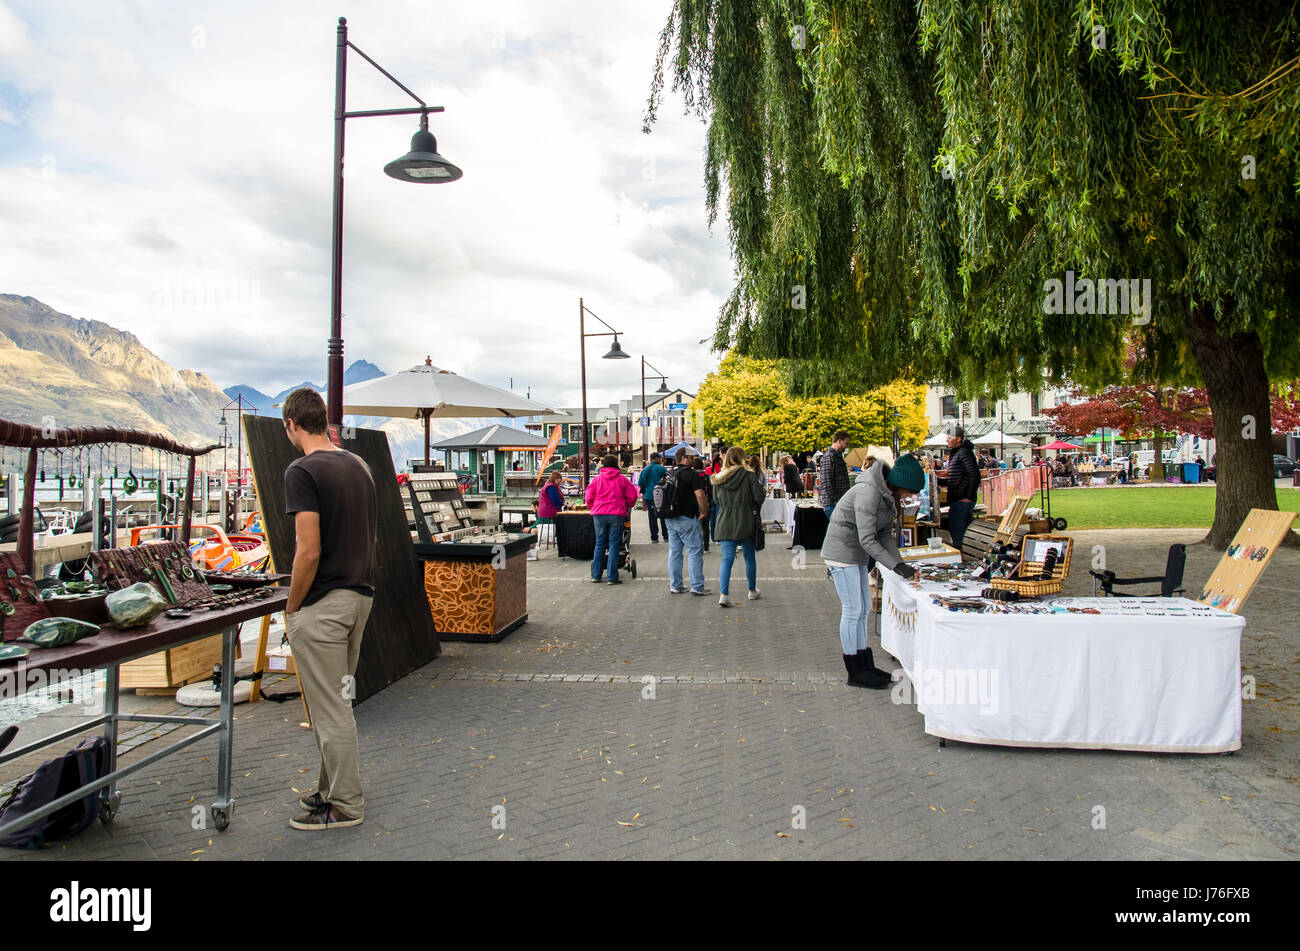 Queenstown,Nuova Zelanda - Aprile 22,2016 : Creative Queenstown di arti e mestieri e mercati che si trova presso il lago di fronte al parco Earnslaw in Queenstown Foto Stock